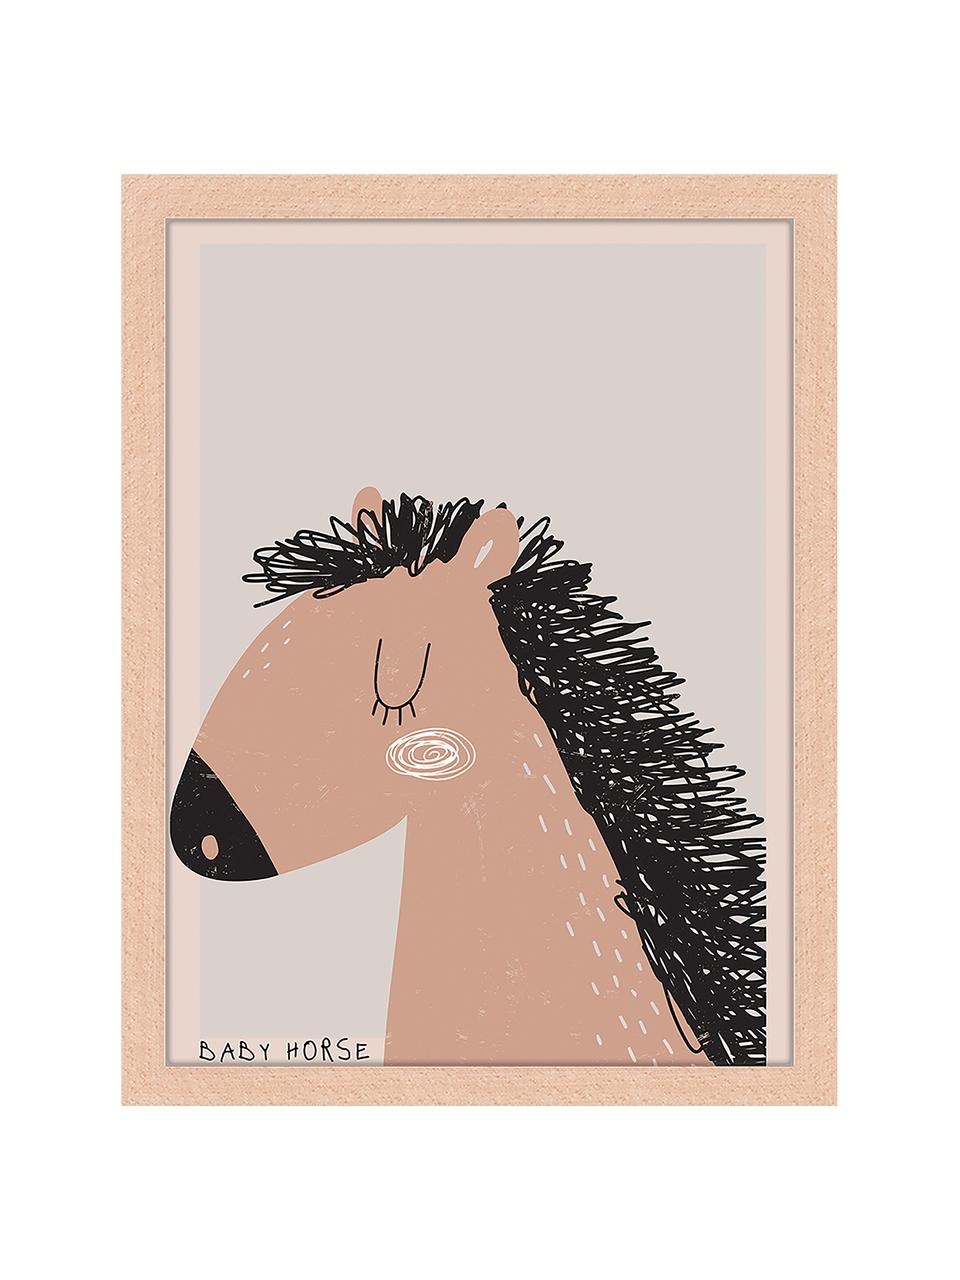 Stampa digitale incorniciata Baby Horse, Cornice: legno di faggio, certific, Immagine: stampa digitale su carta , Legno chiaro, grigio chiaro, torrone, Larg. 53 x Alt. 63 cm